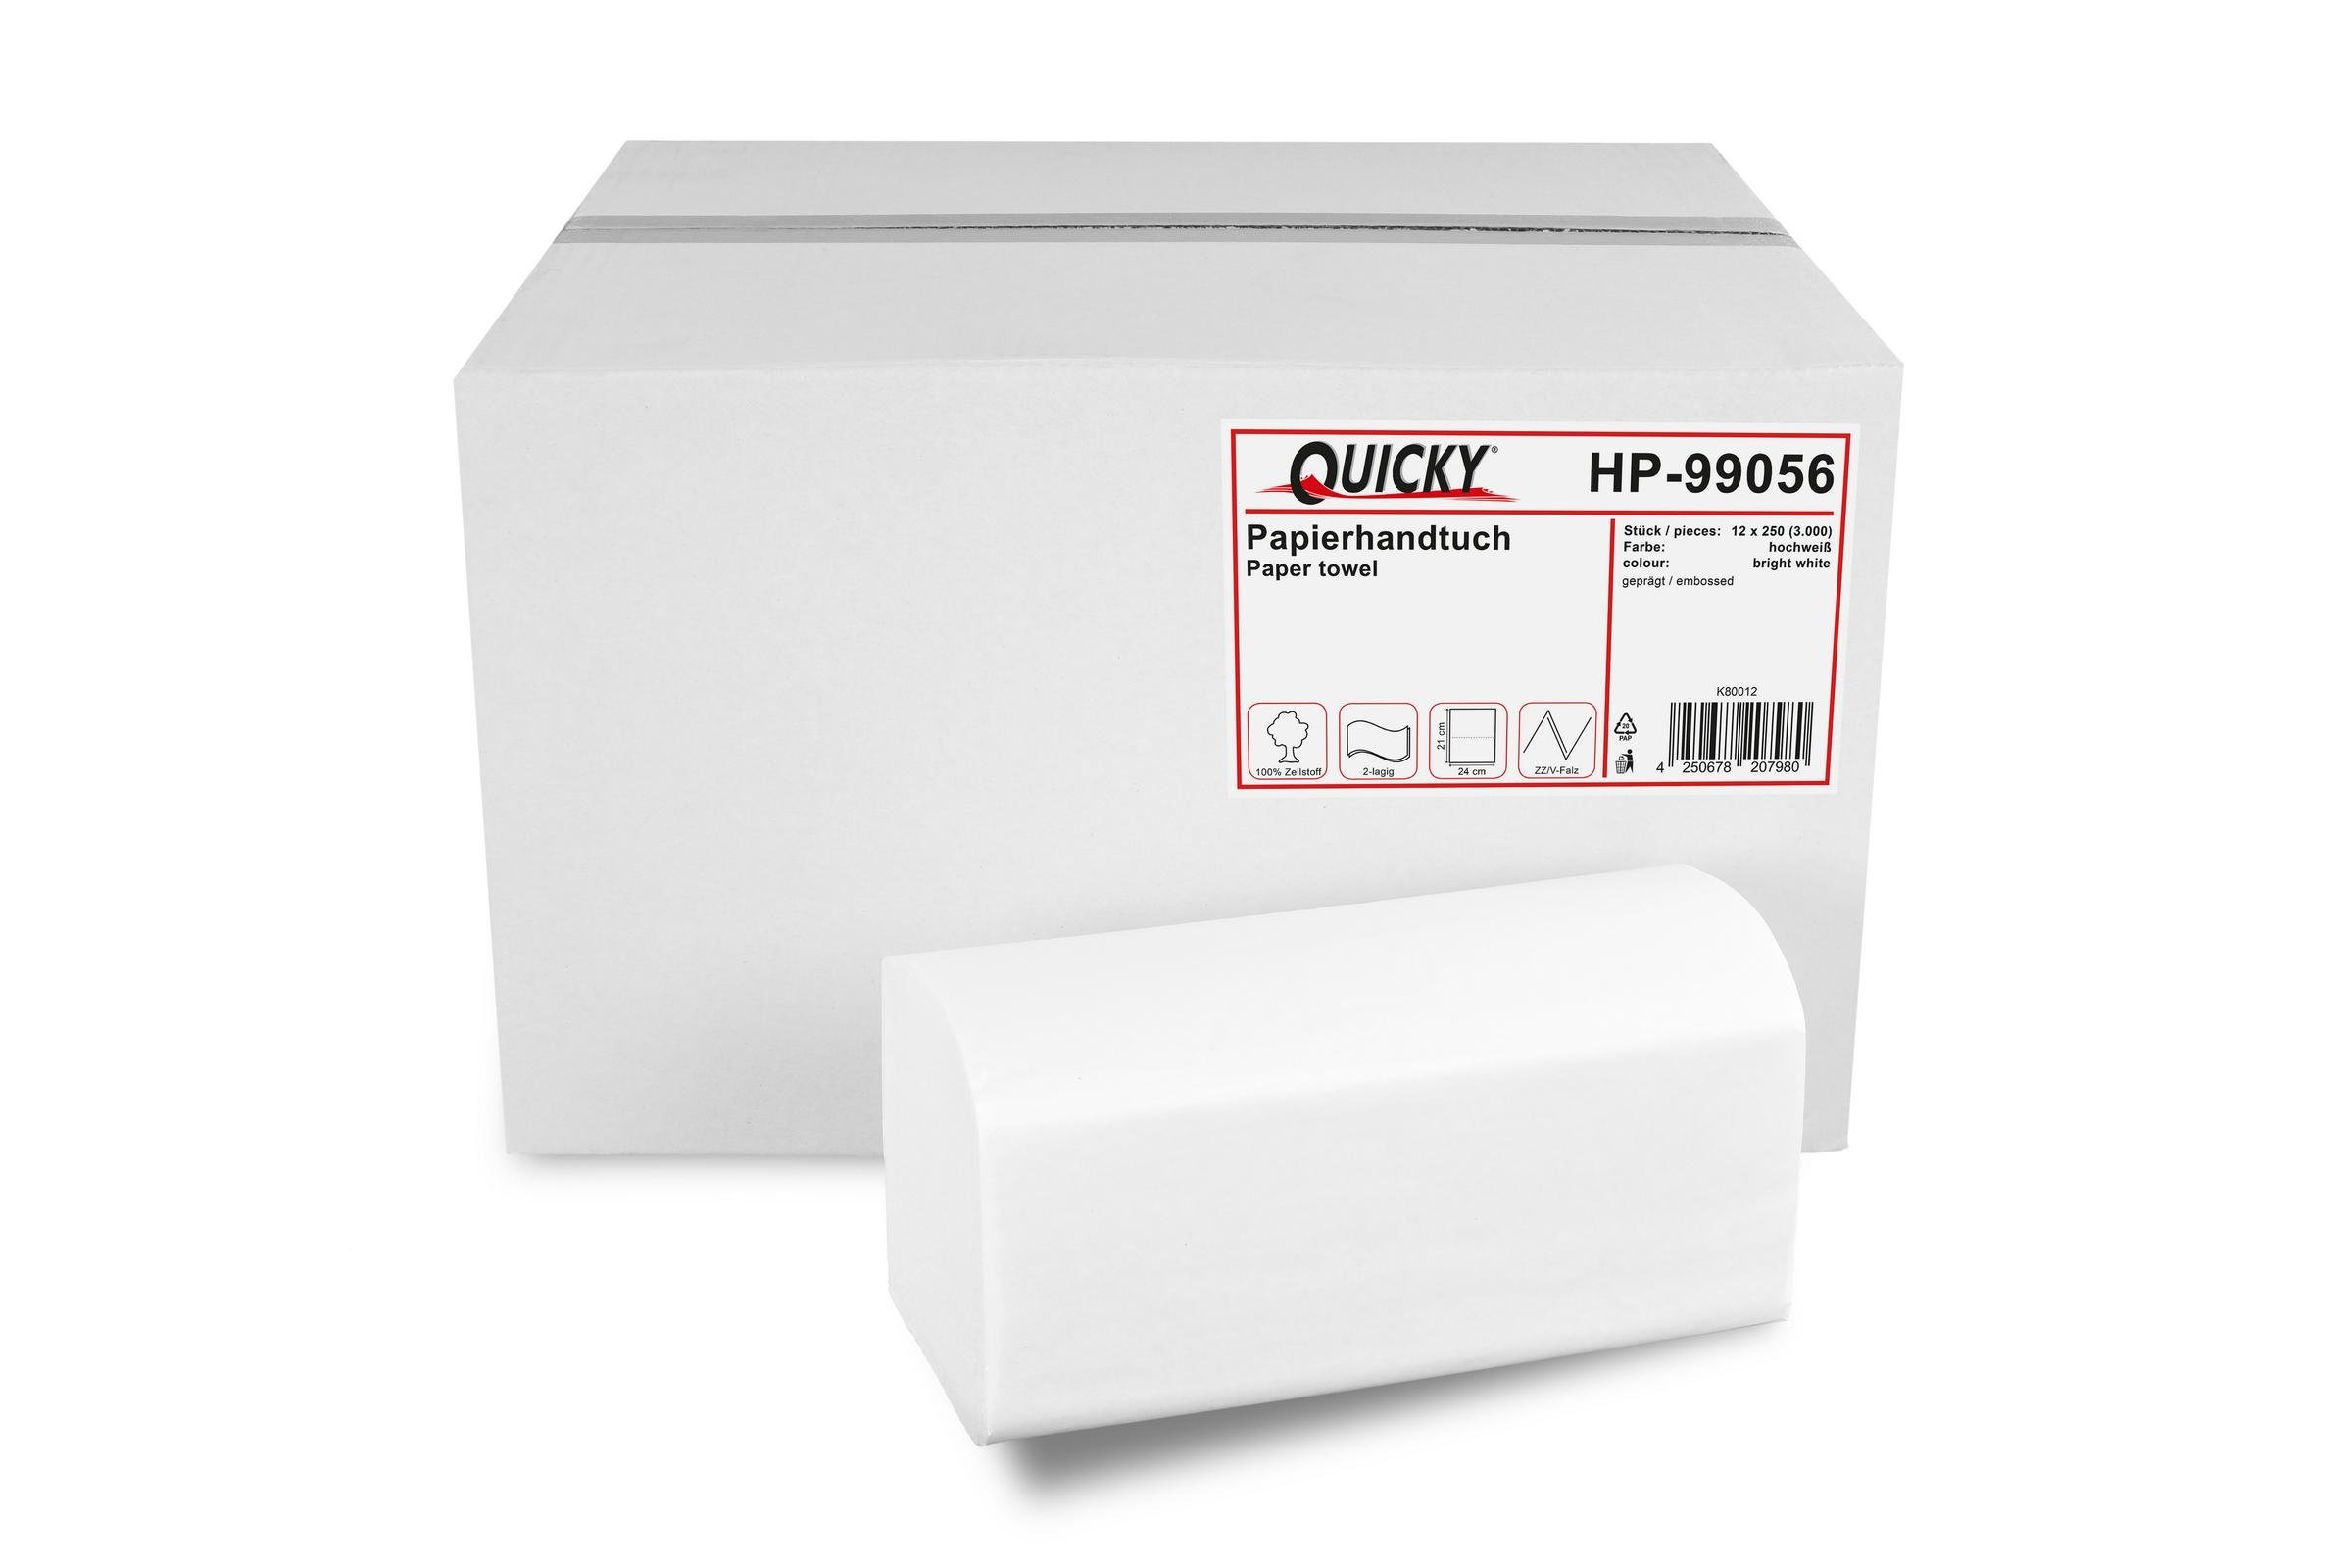 Quicky HP-99056 Papierhandtuch, Hochweiß (3000-er Pack)